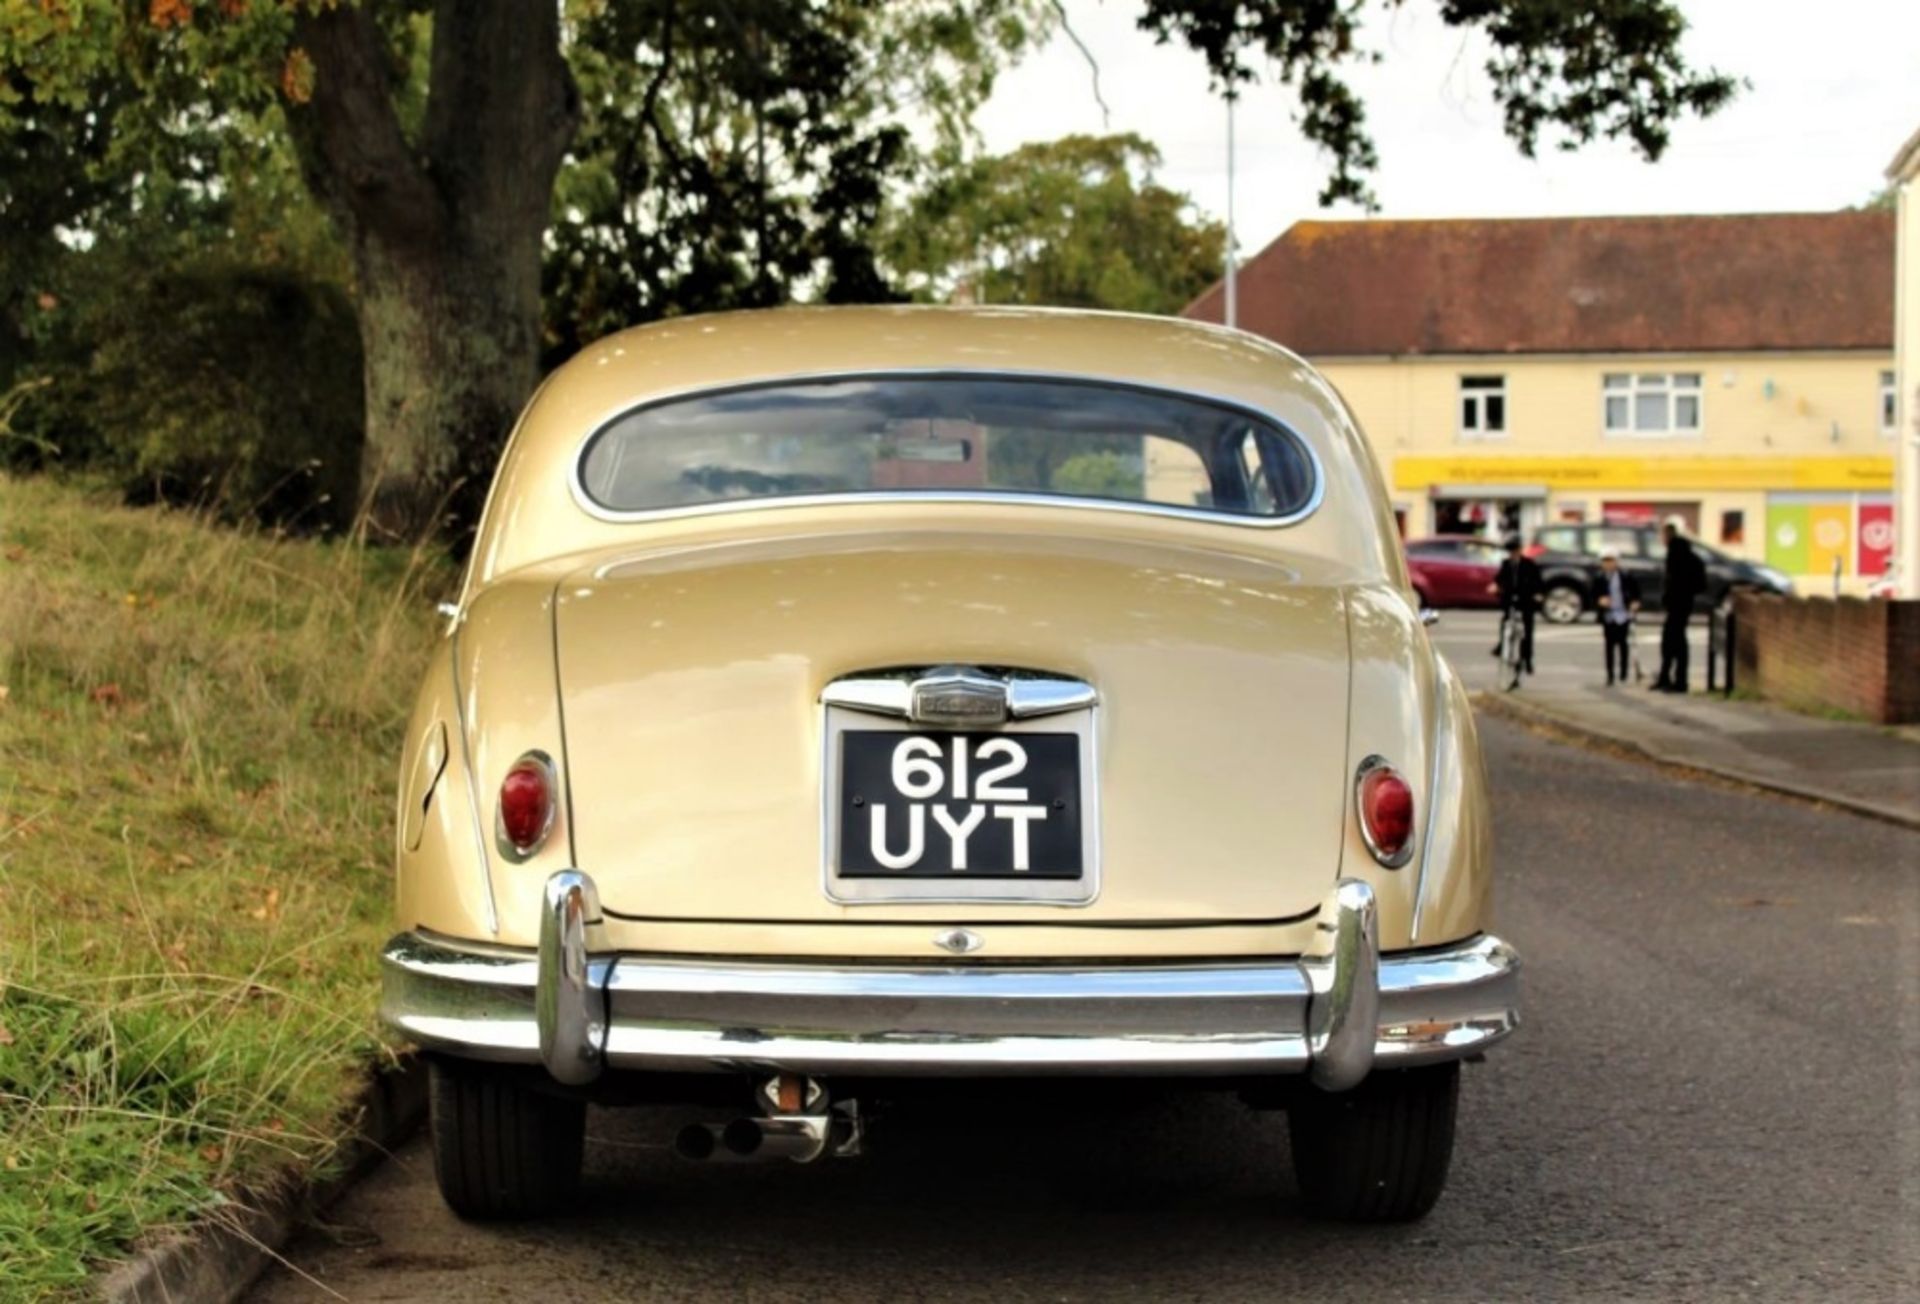 1958 JAGUAR ‘MARK 1’ 2.4 LITRE SALOON Registration Number: 612 UYT Chassis Number: S912121 - Bild 5 aus 13